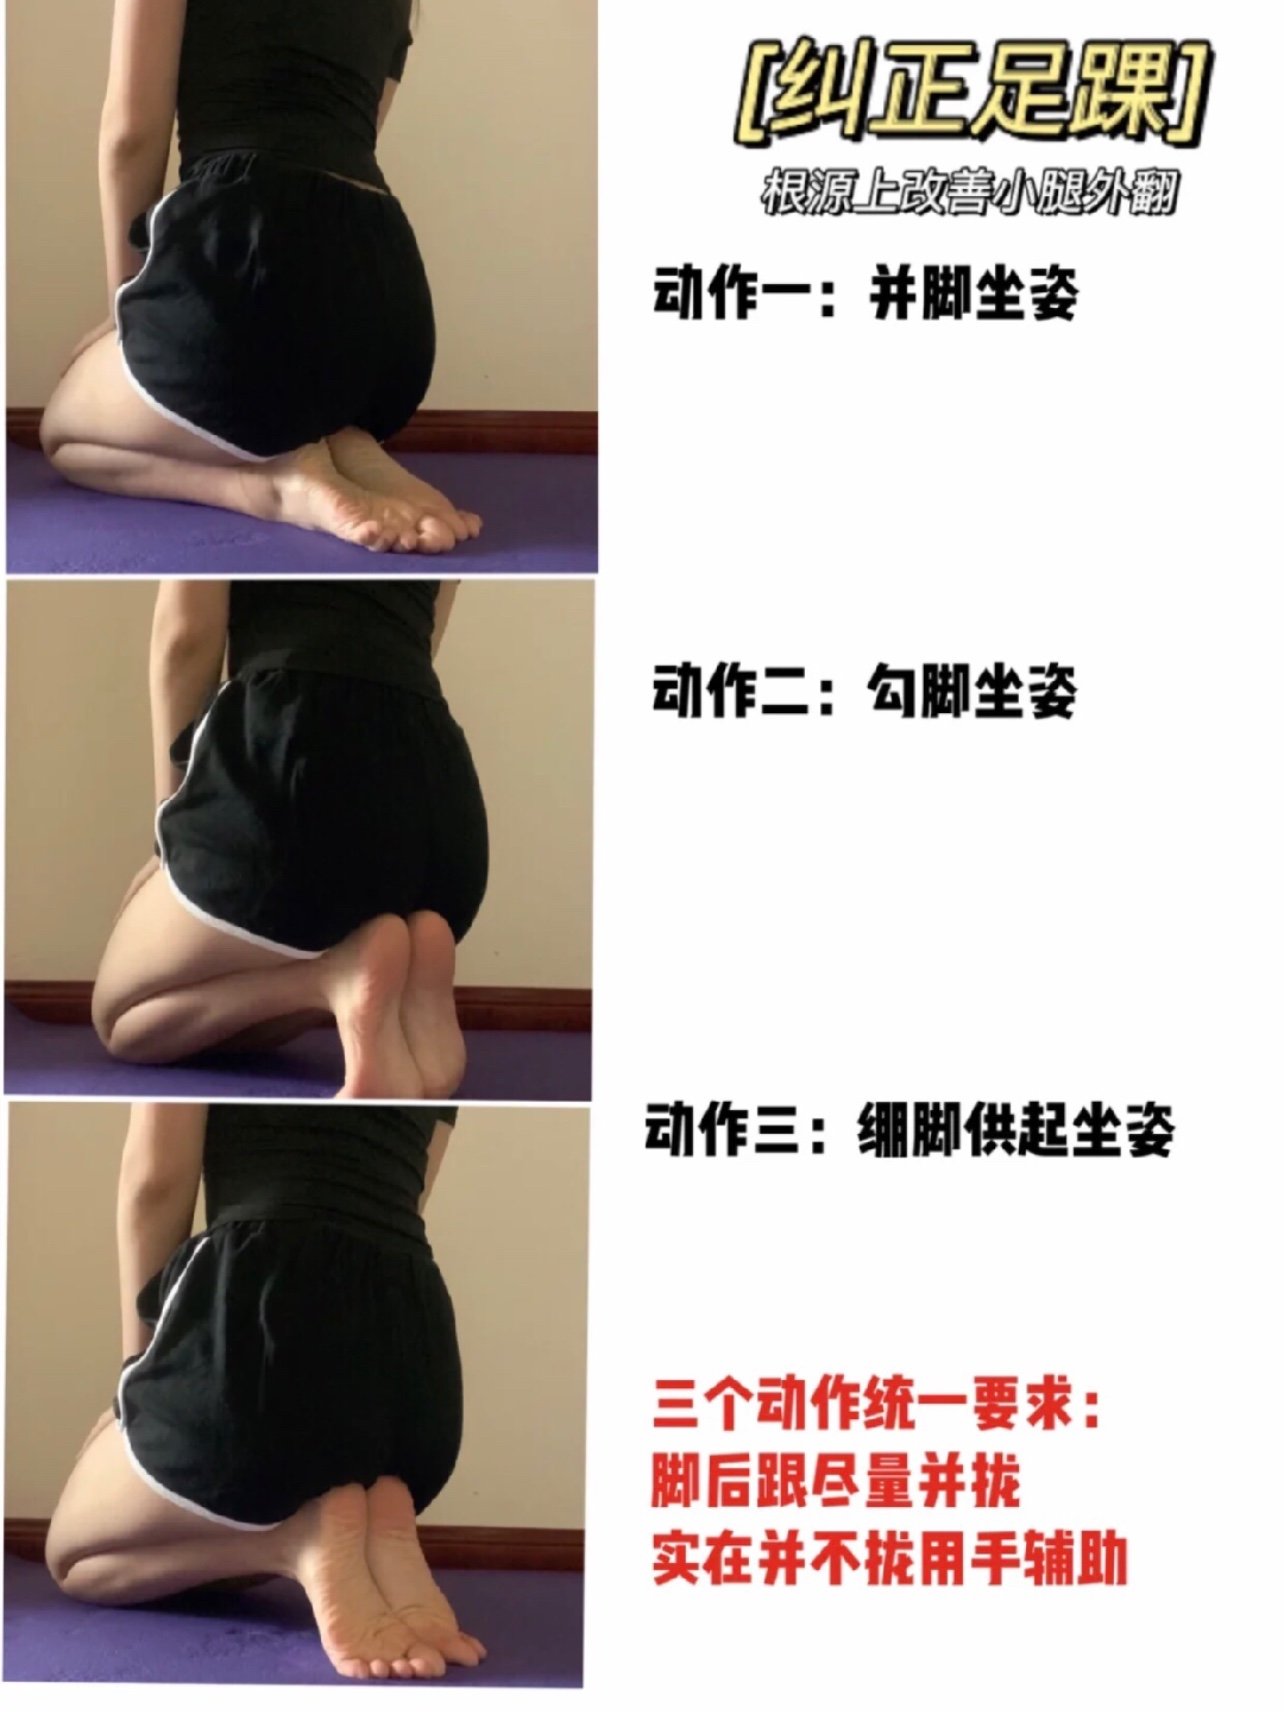 改善o型腿的动作图解图片